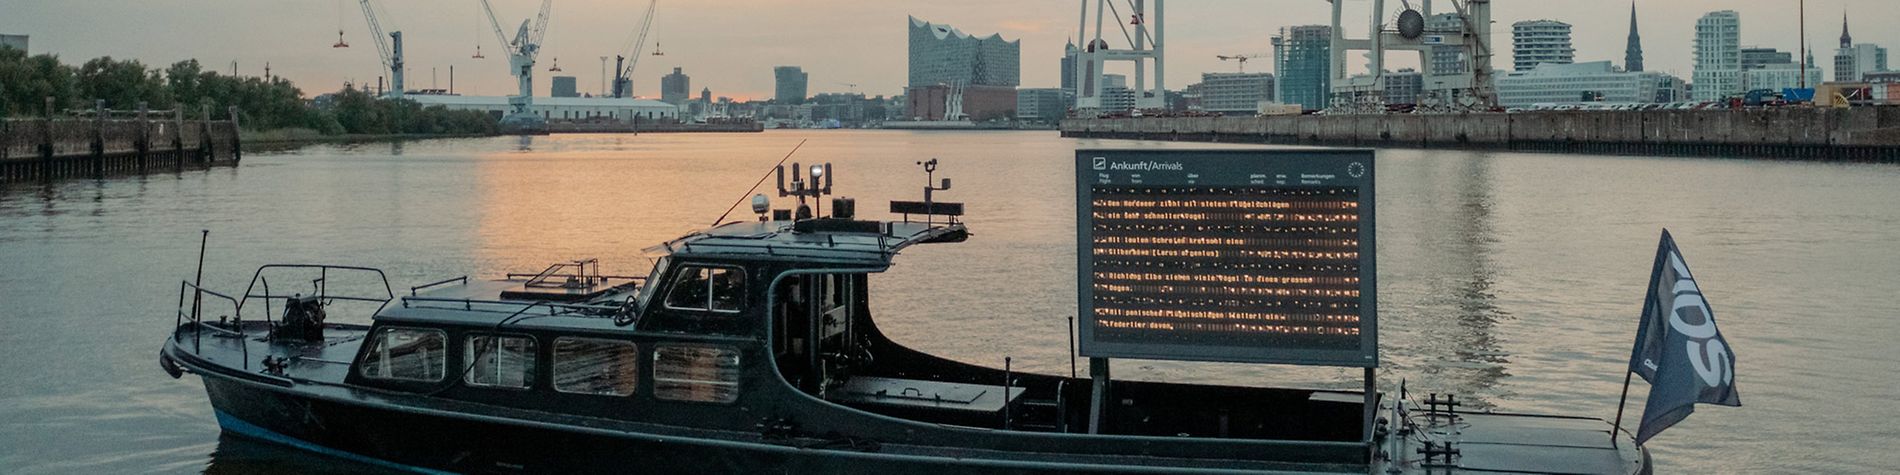 Schute des Kunstprojekts FIDS Open Research Lab im Hamburger Hafen mit elektronischer Anzeigetafel für Vogelflugrouten